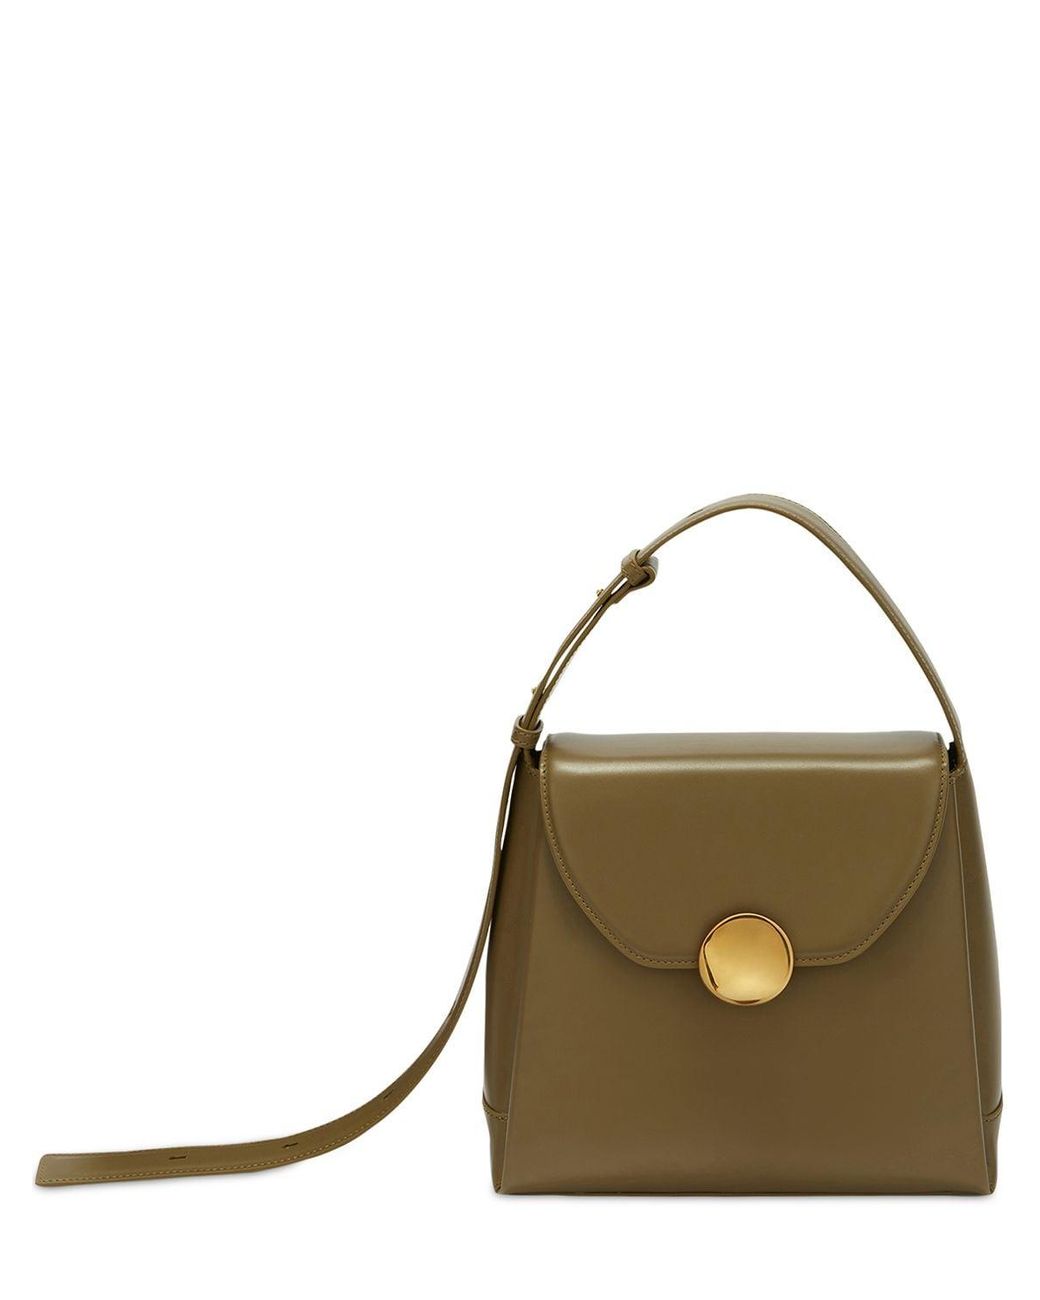 Jil Sander Small Victor Leather Shoulder Bag in Olive Green (Metallic ...